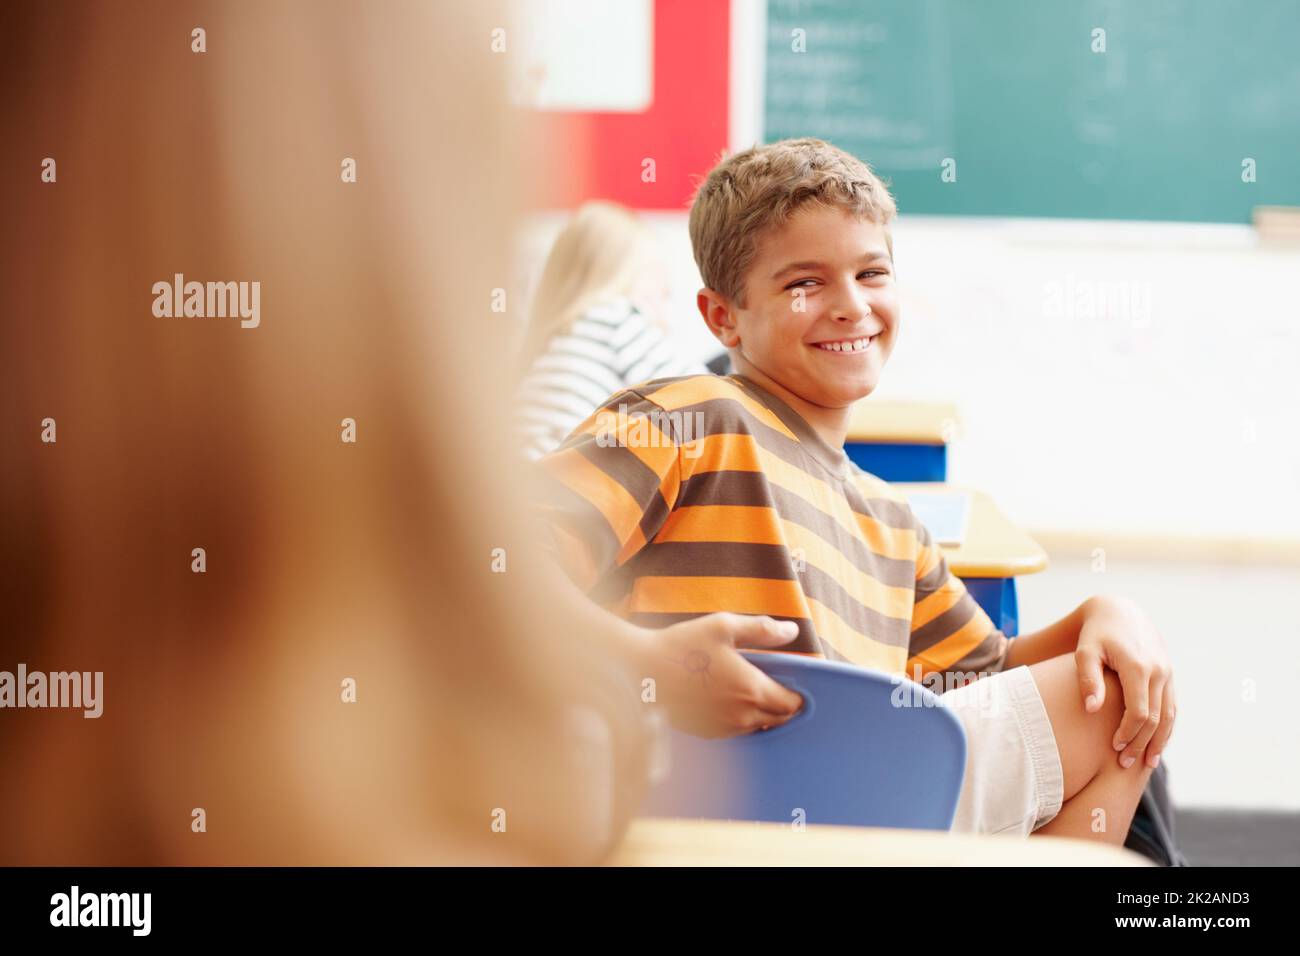 Holen Sie sich die Aufmerksamkeit des coolen Kindes in der Klasse. Lächelnder Junge dreht sich in der Klasse um, um einen Klassenkameraden zu betrachten - Copyspace. Stockfoto